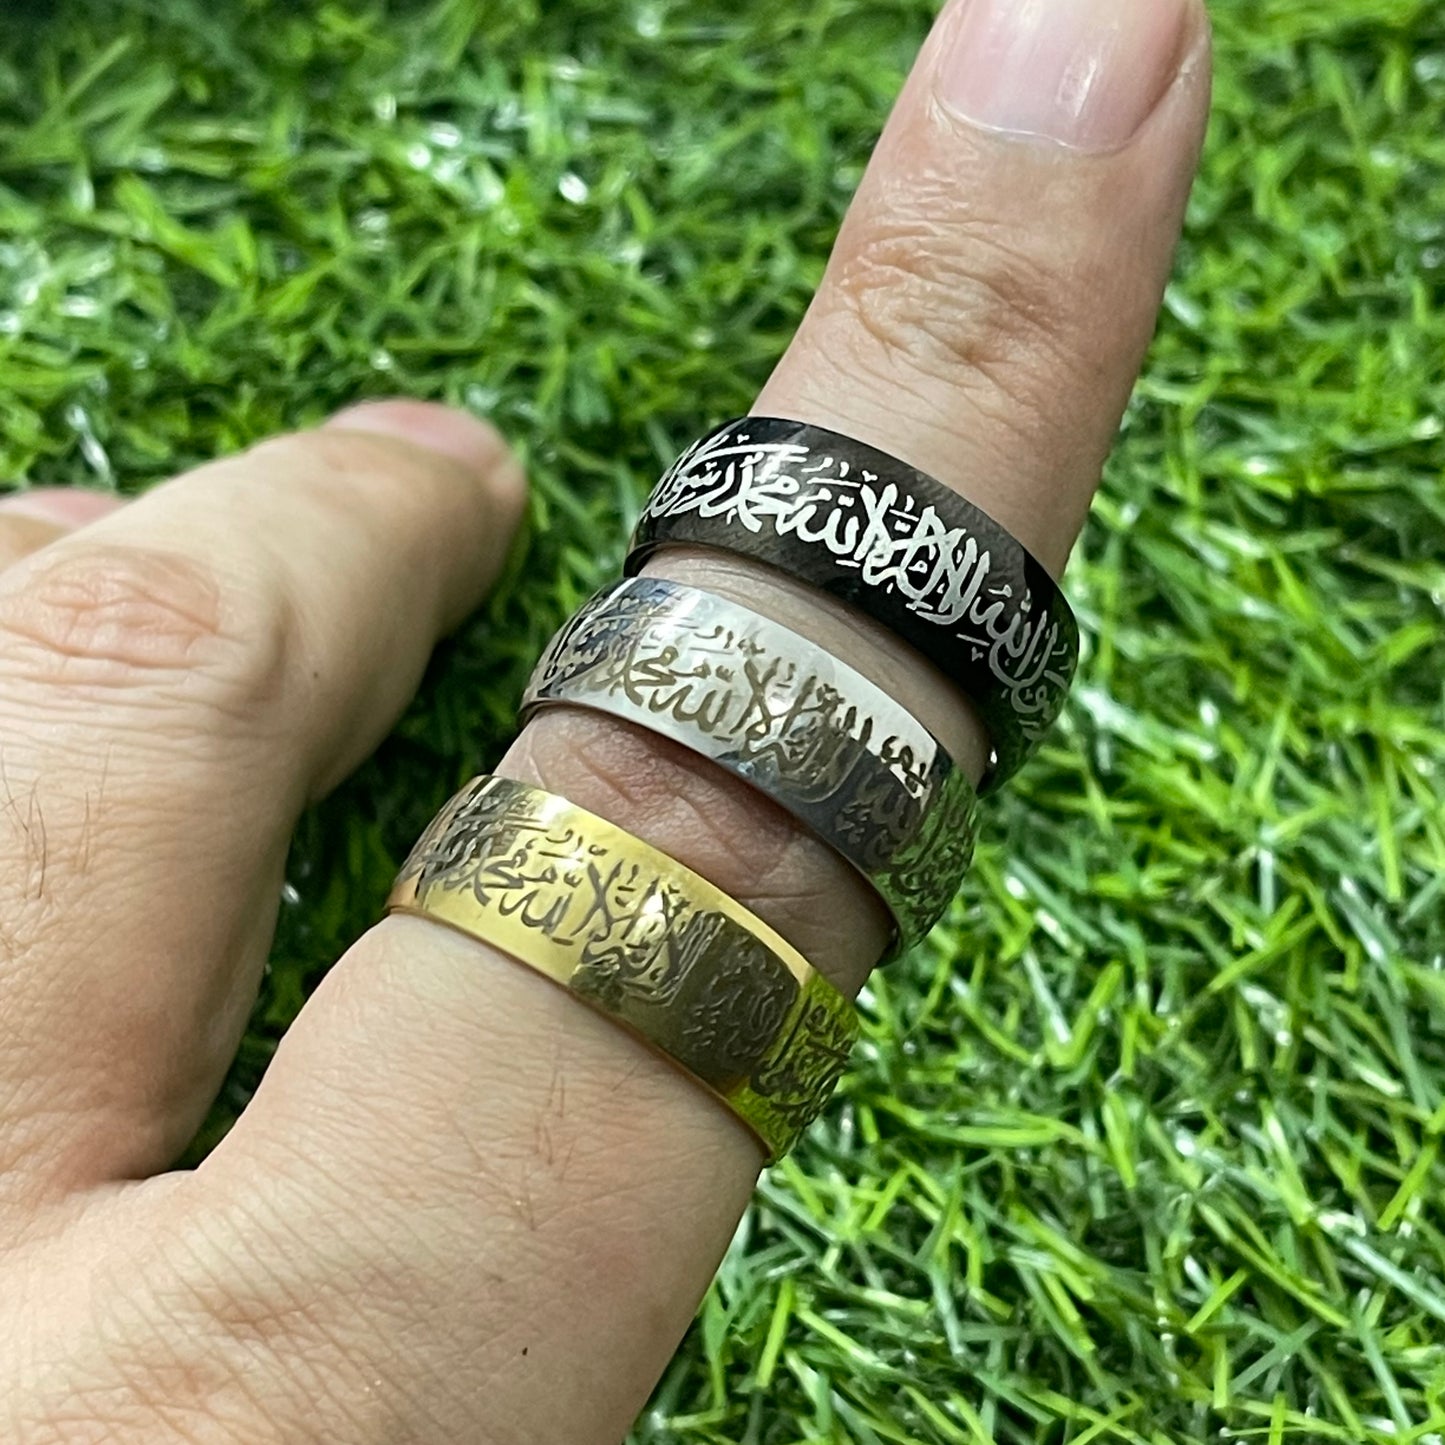 Kalma Islamic Ring For Men Women (Golden)